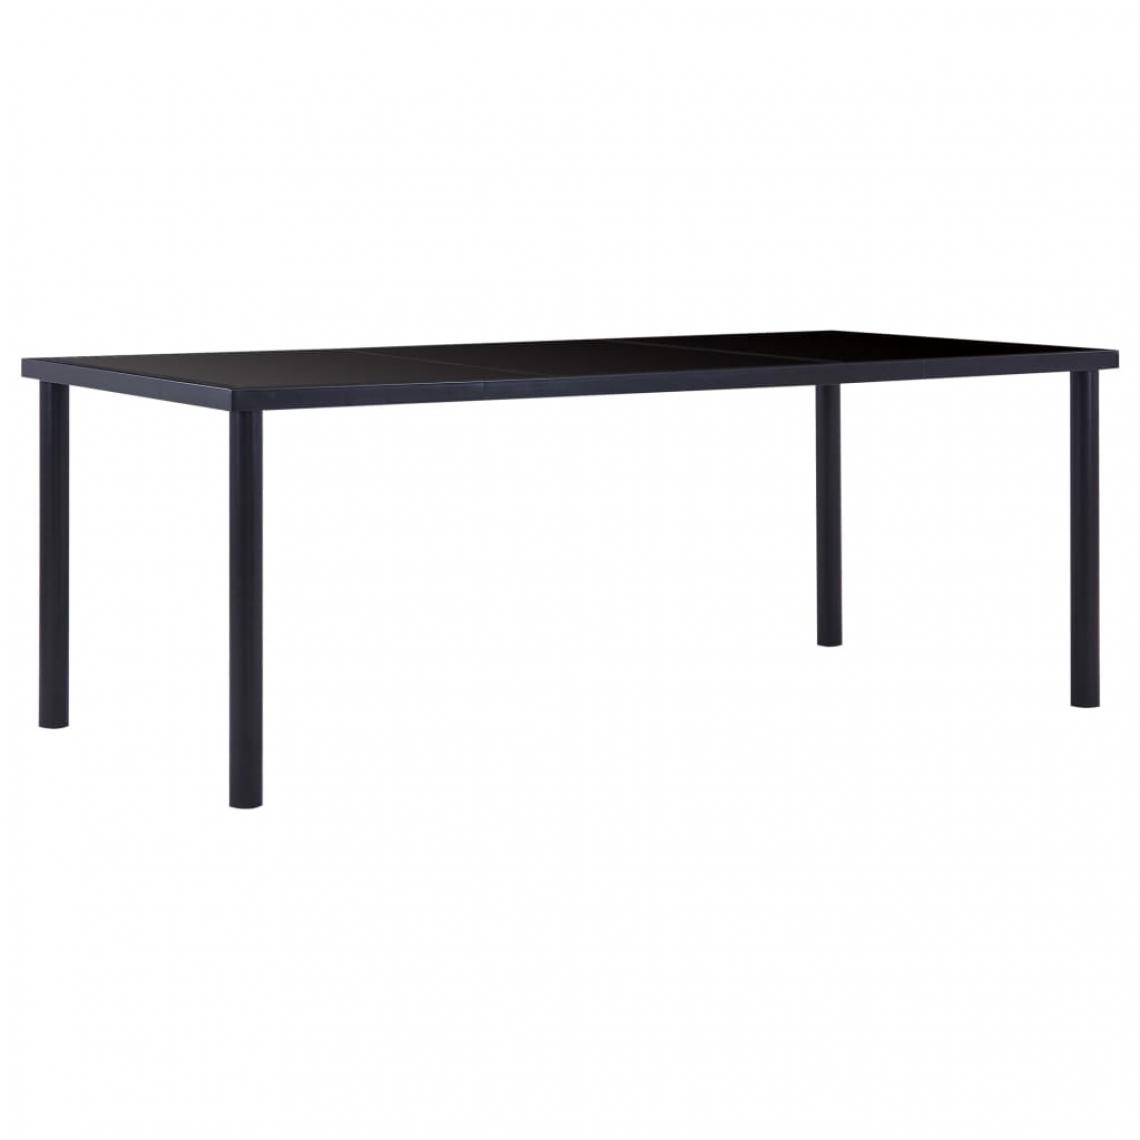 Icaverne - Superbe Tables edition Nassau Table de salle à manger Noir 200x100x75 cm Verre trempé - Tables à manger